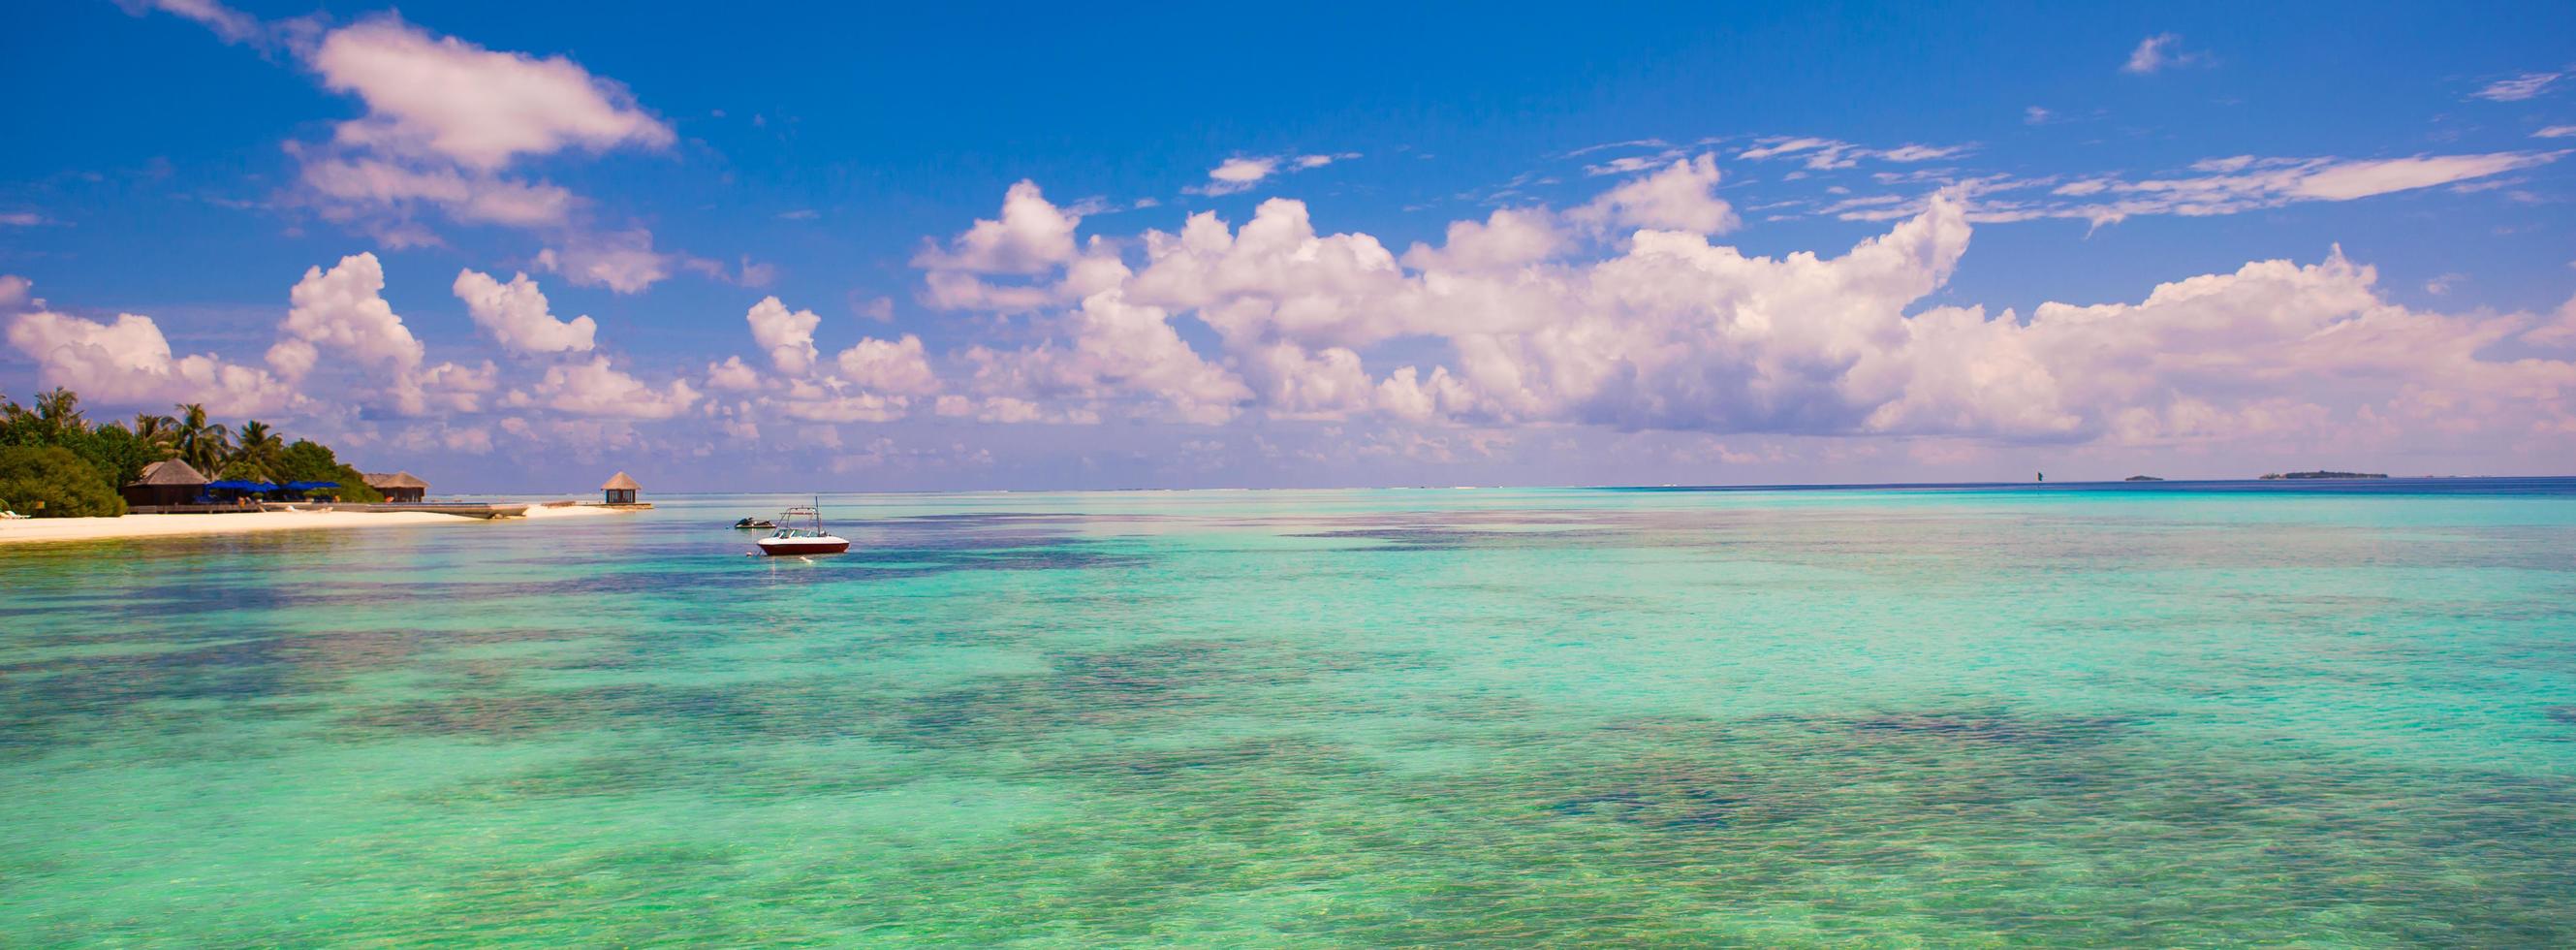 Maldiven, Zuid-Azië, 2020 - boot in het water bij een tropisch resort foto